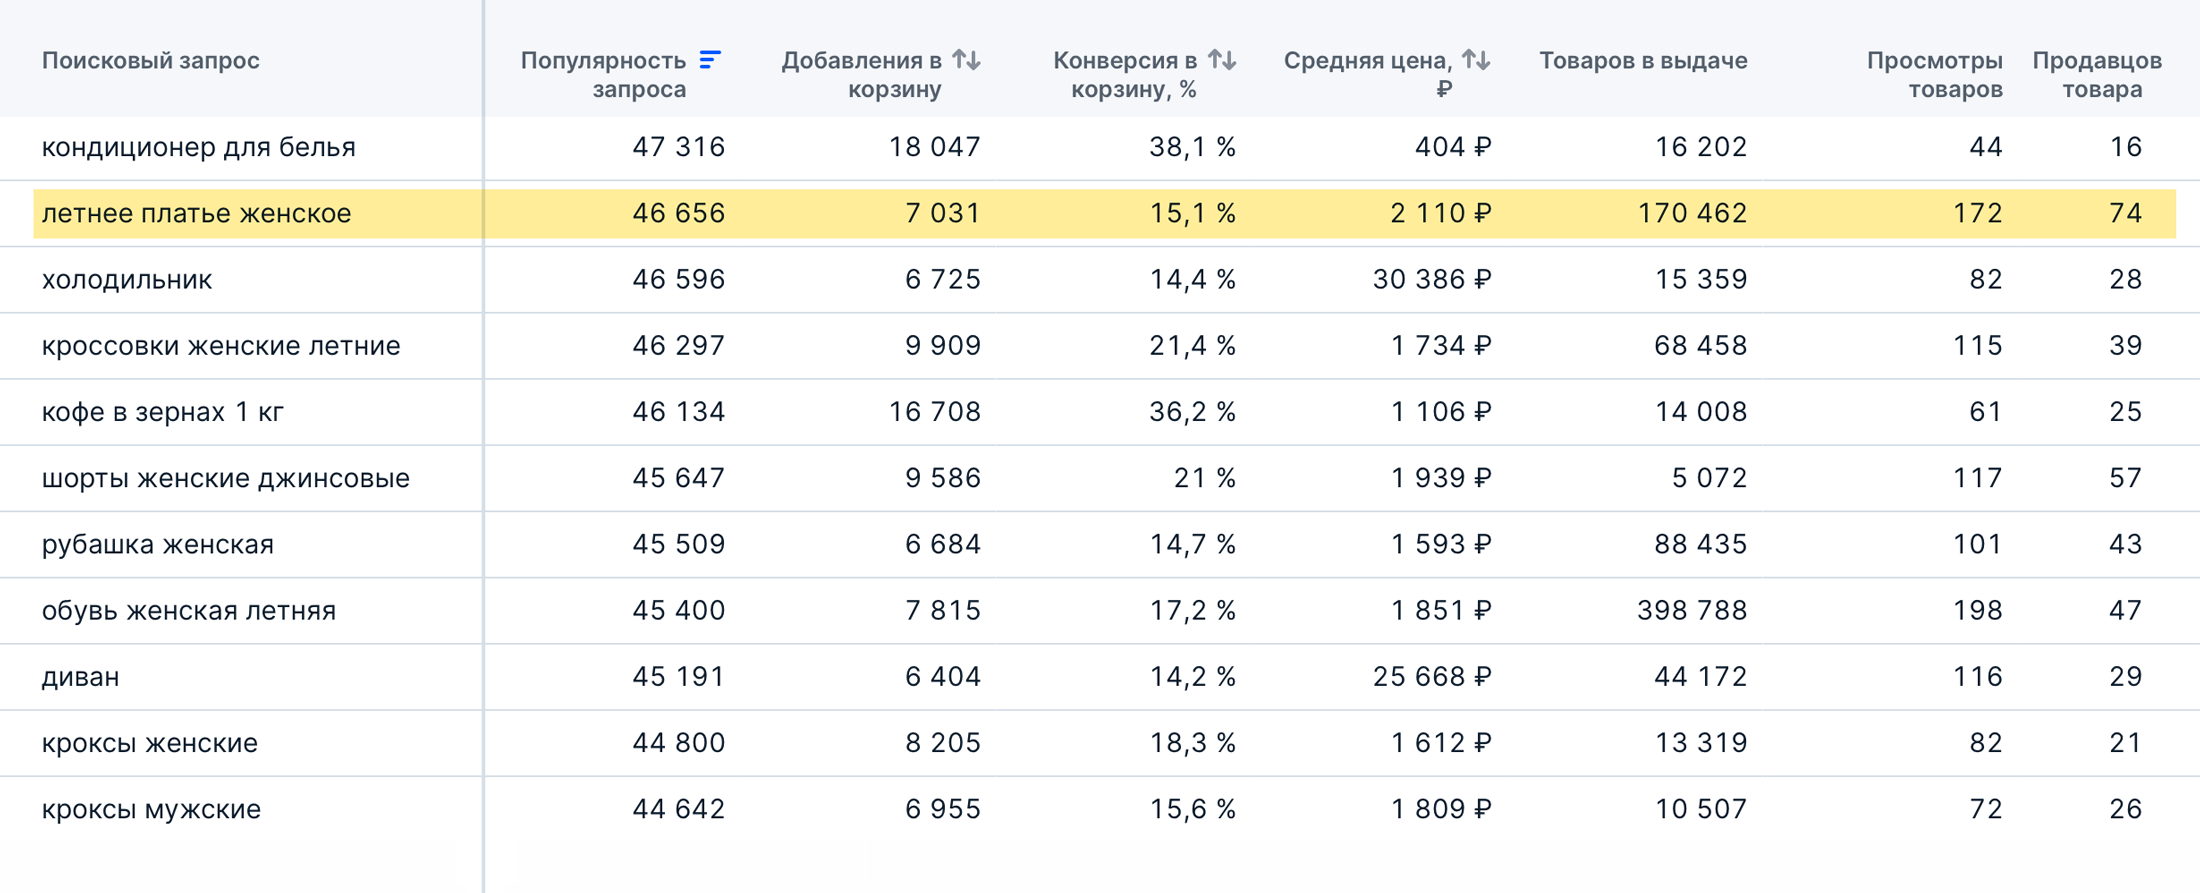 Изучаю статистику по категории, смотрю в динамике: спрос постоянно растет. Источник: data.ozon.ru